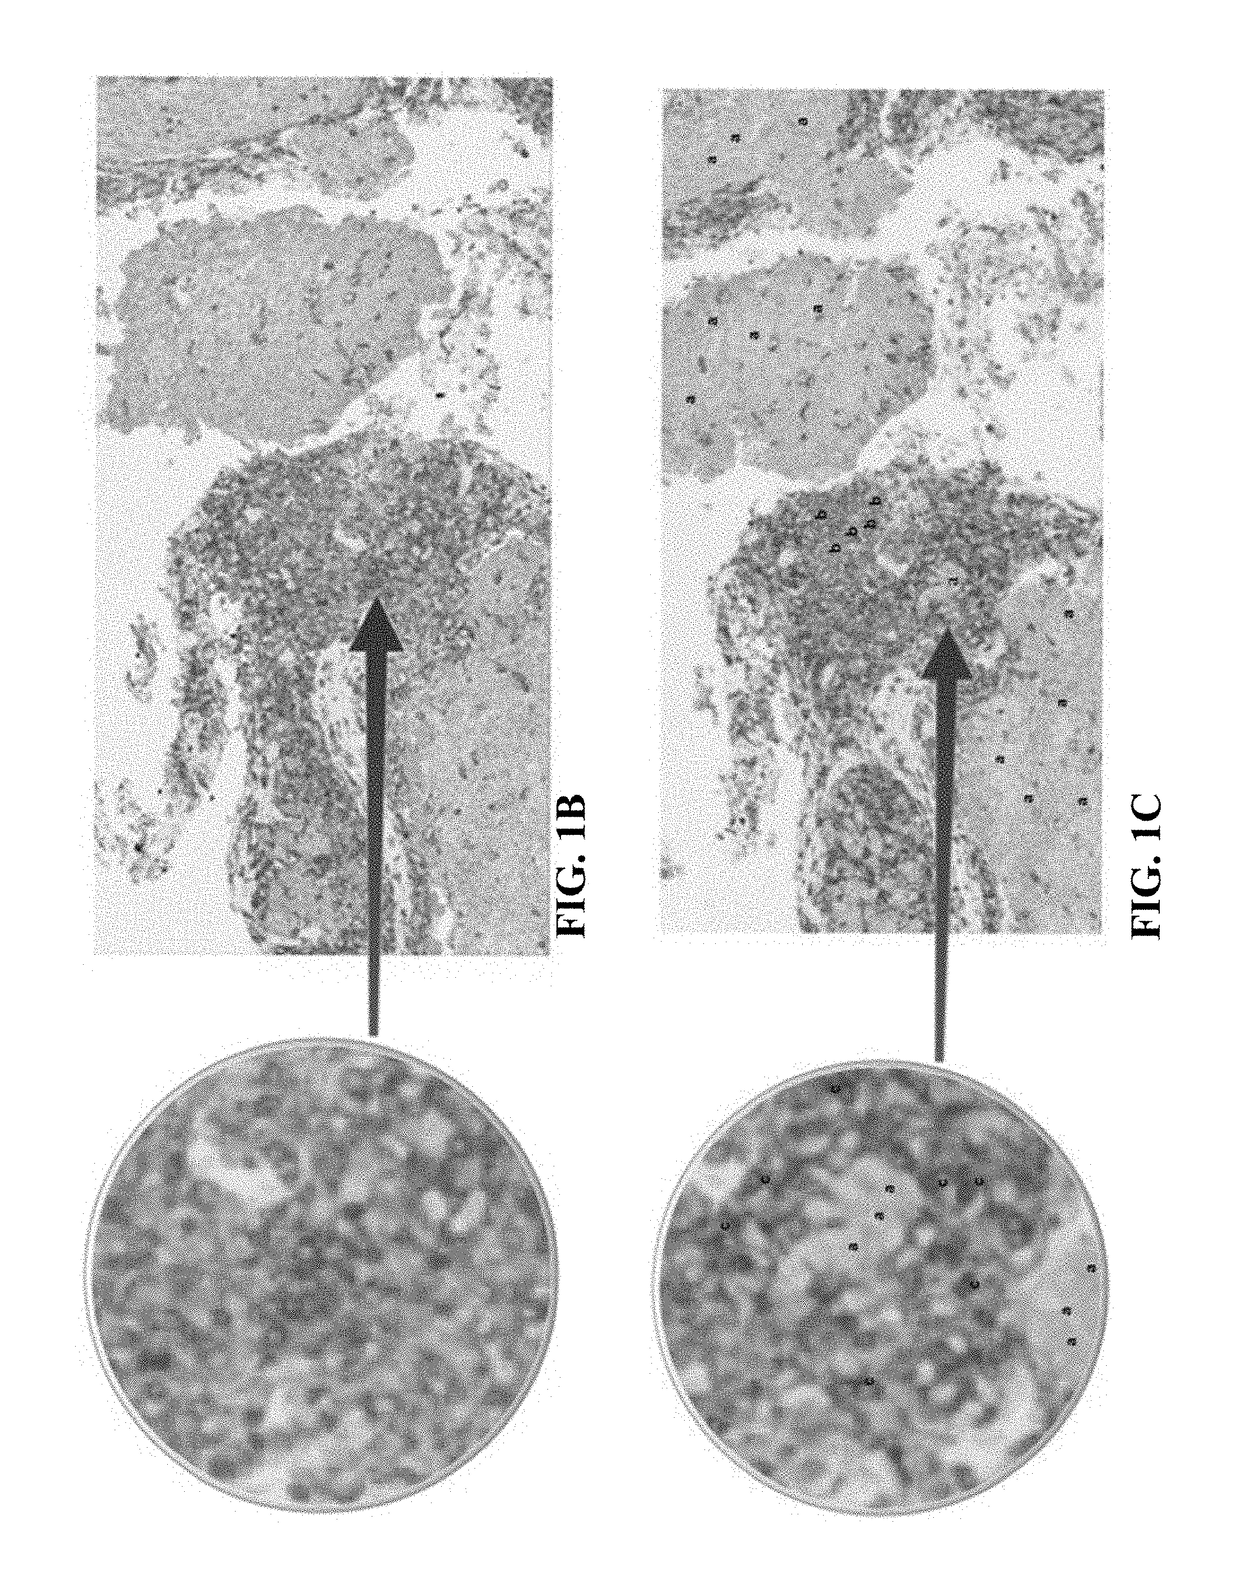 Methods of identifying immune cells in pd-l1 positive tumor tissue